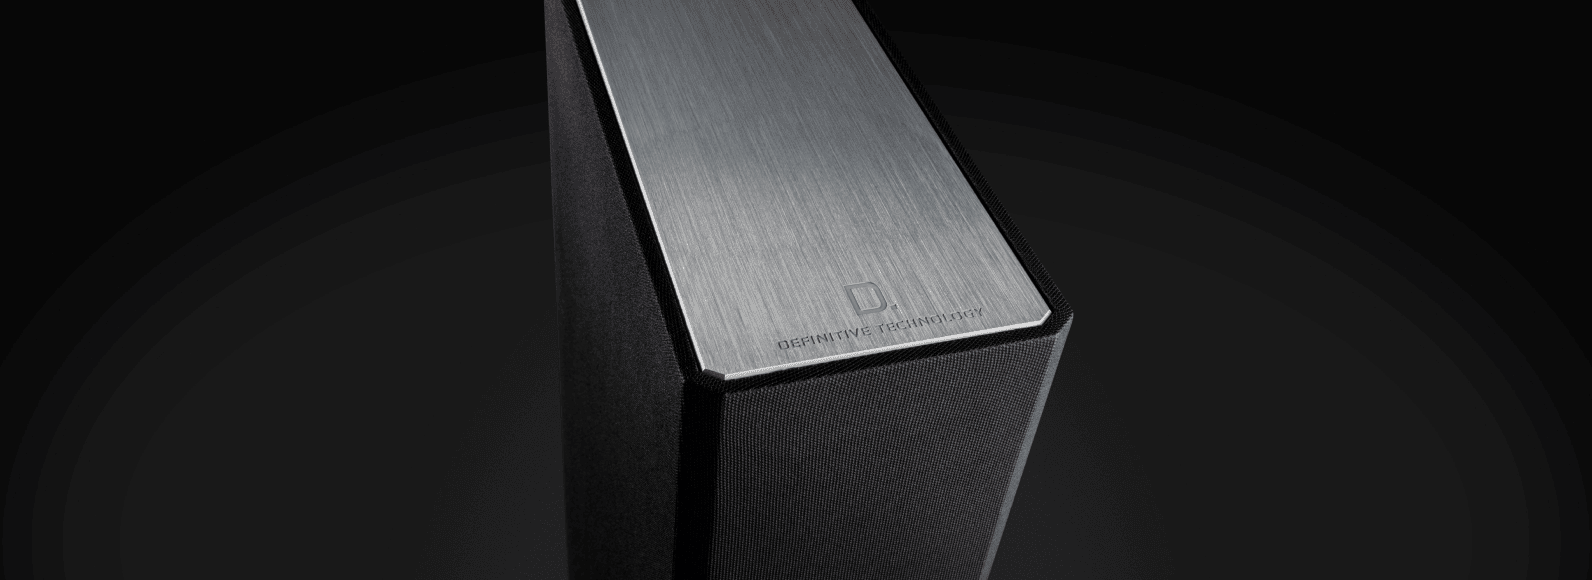 BP9040 Floor Standing Tower Speaker | Definitive Technology™